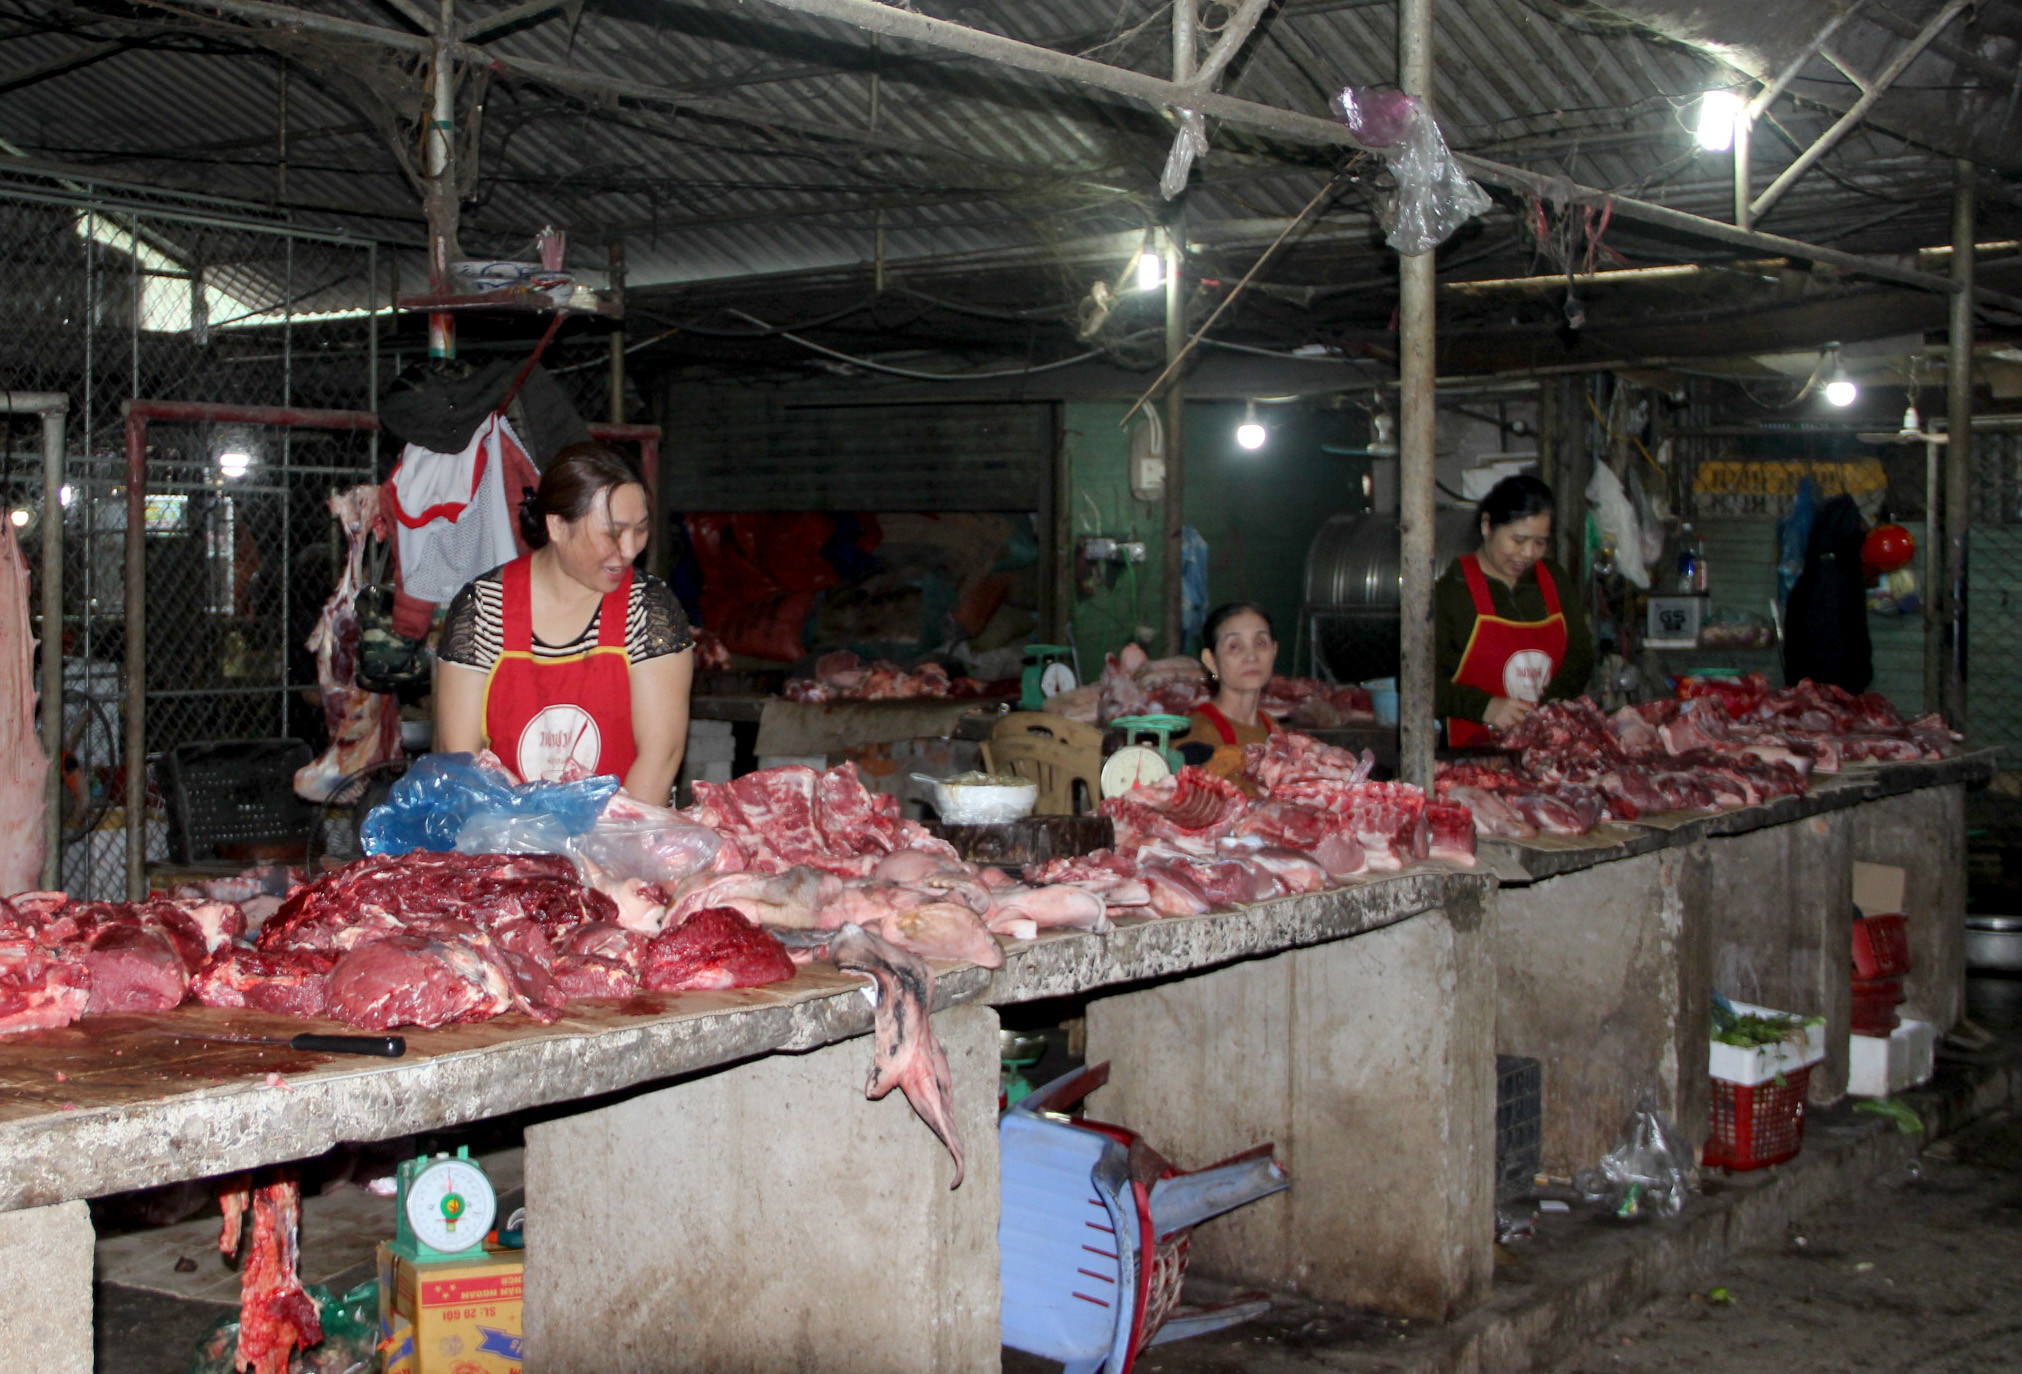 Các quầy bán thịt lợn, thịt bò tại các khu chợ hiện đang trong tình trạng đìu hiu. Ảnh: Nguyên Châu